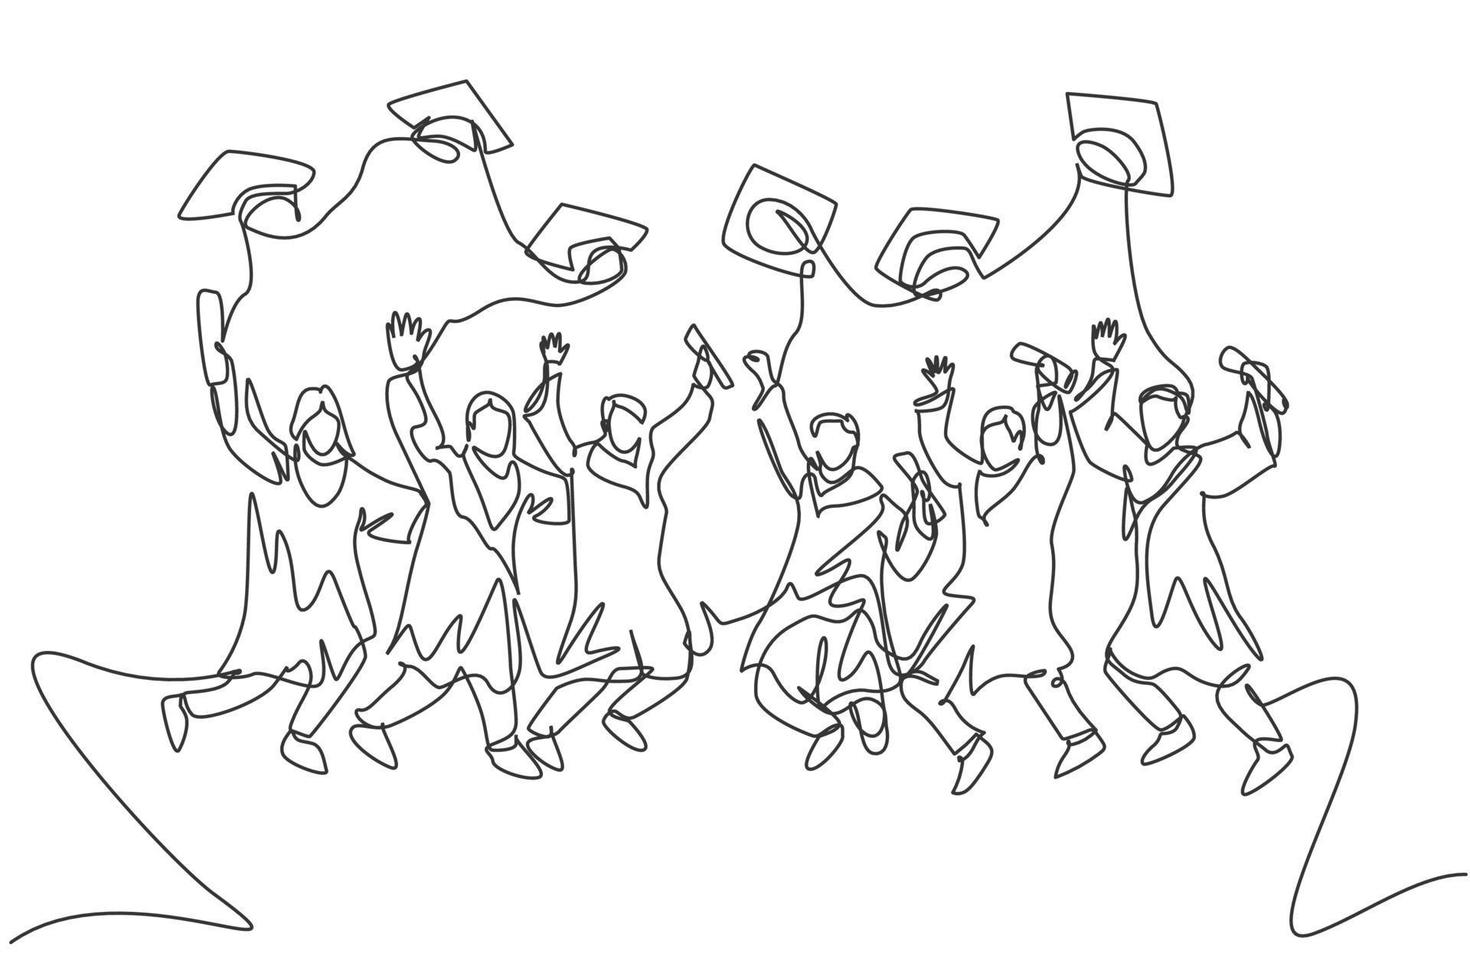 Eine Strichzeichnungsgruppe junger glücklicher Absolventen männlicher und weiblicher College-Studenten, die ein Kleid springen und Daumen hoch geben. Bildungskonzept kontinuierliche Linie zeichnen Grafikdesign-Vektor-Illustration vektor